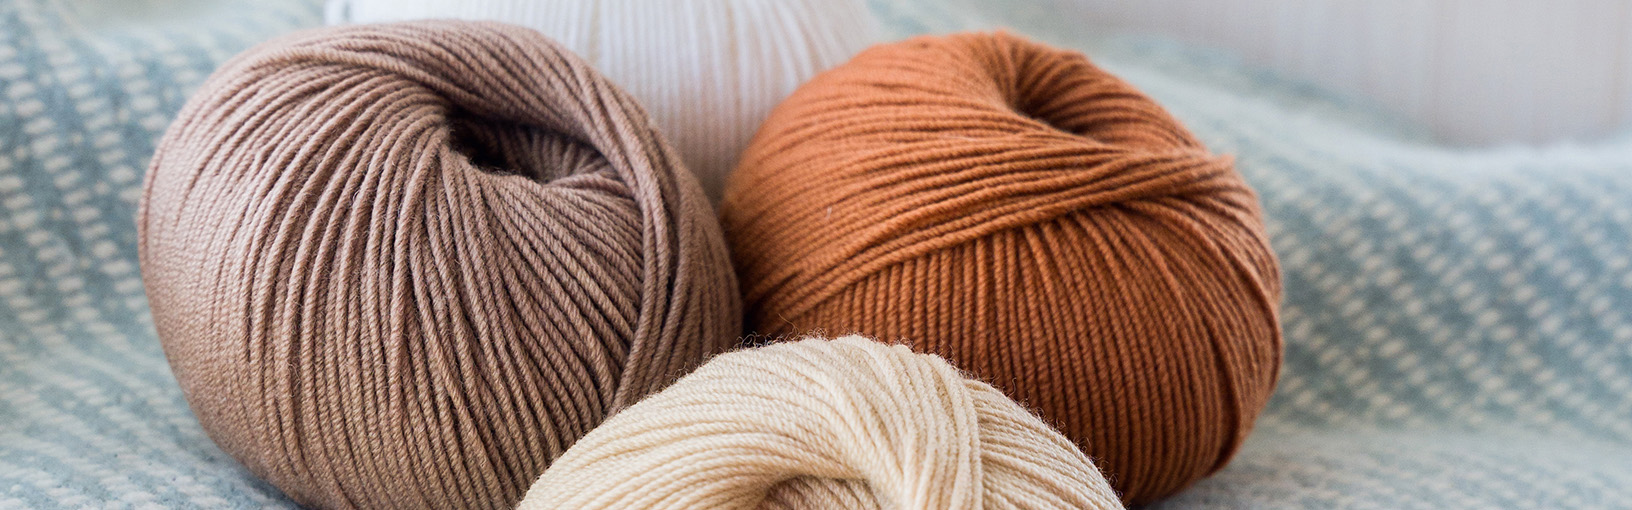 Garn af høj kvalitet til strikning, hækling og filtning LANA GROSSA<br> uld & garn | Tweed